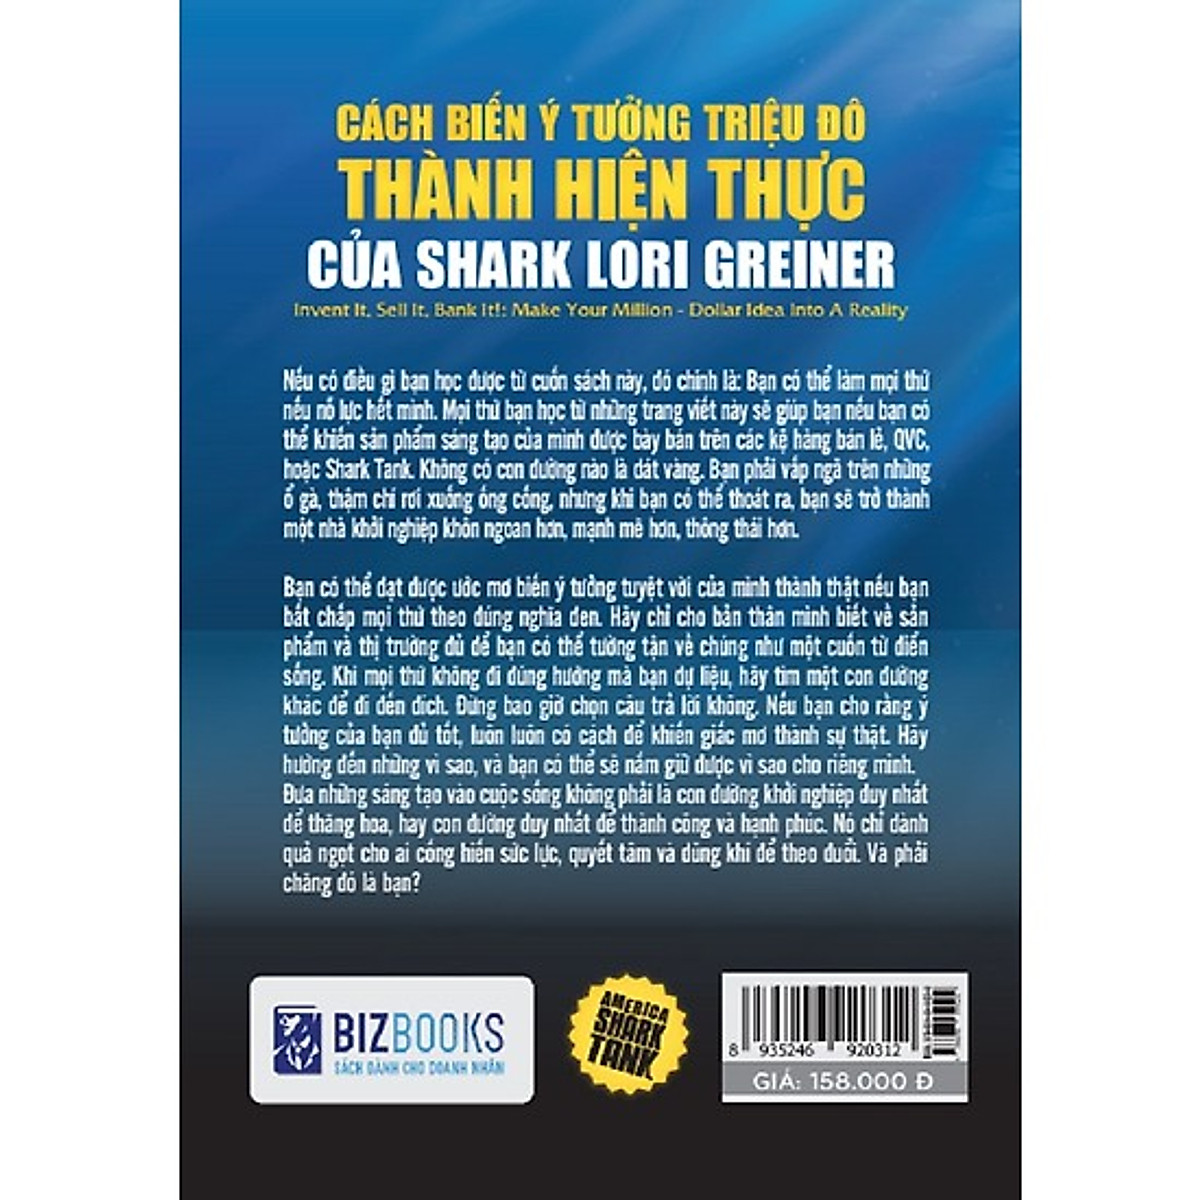 America Shark Tank: Cách Biến Ý Tưởng Triệu Đô Thành Hiện Thực Của Shark Lori Greiner (Tặng kèm Bookmark PL)